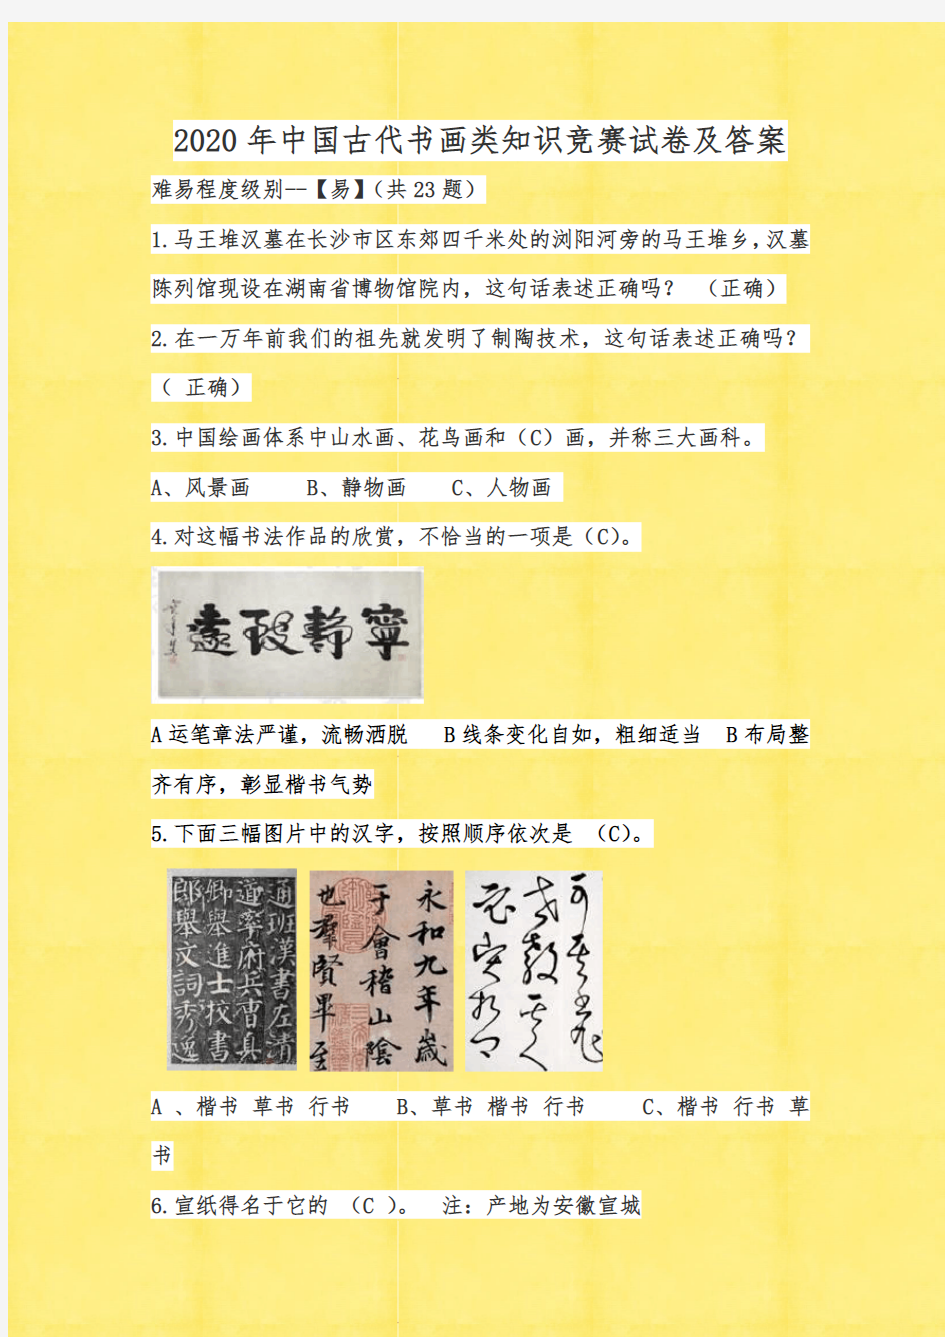 2020年中国古代书画类知识竞赛试卷及答案